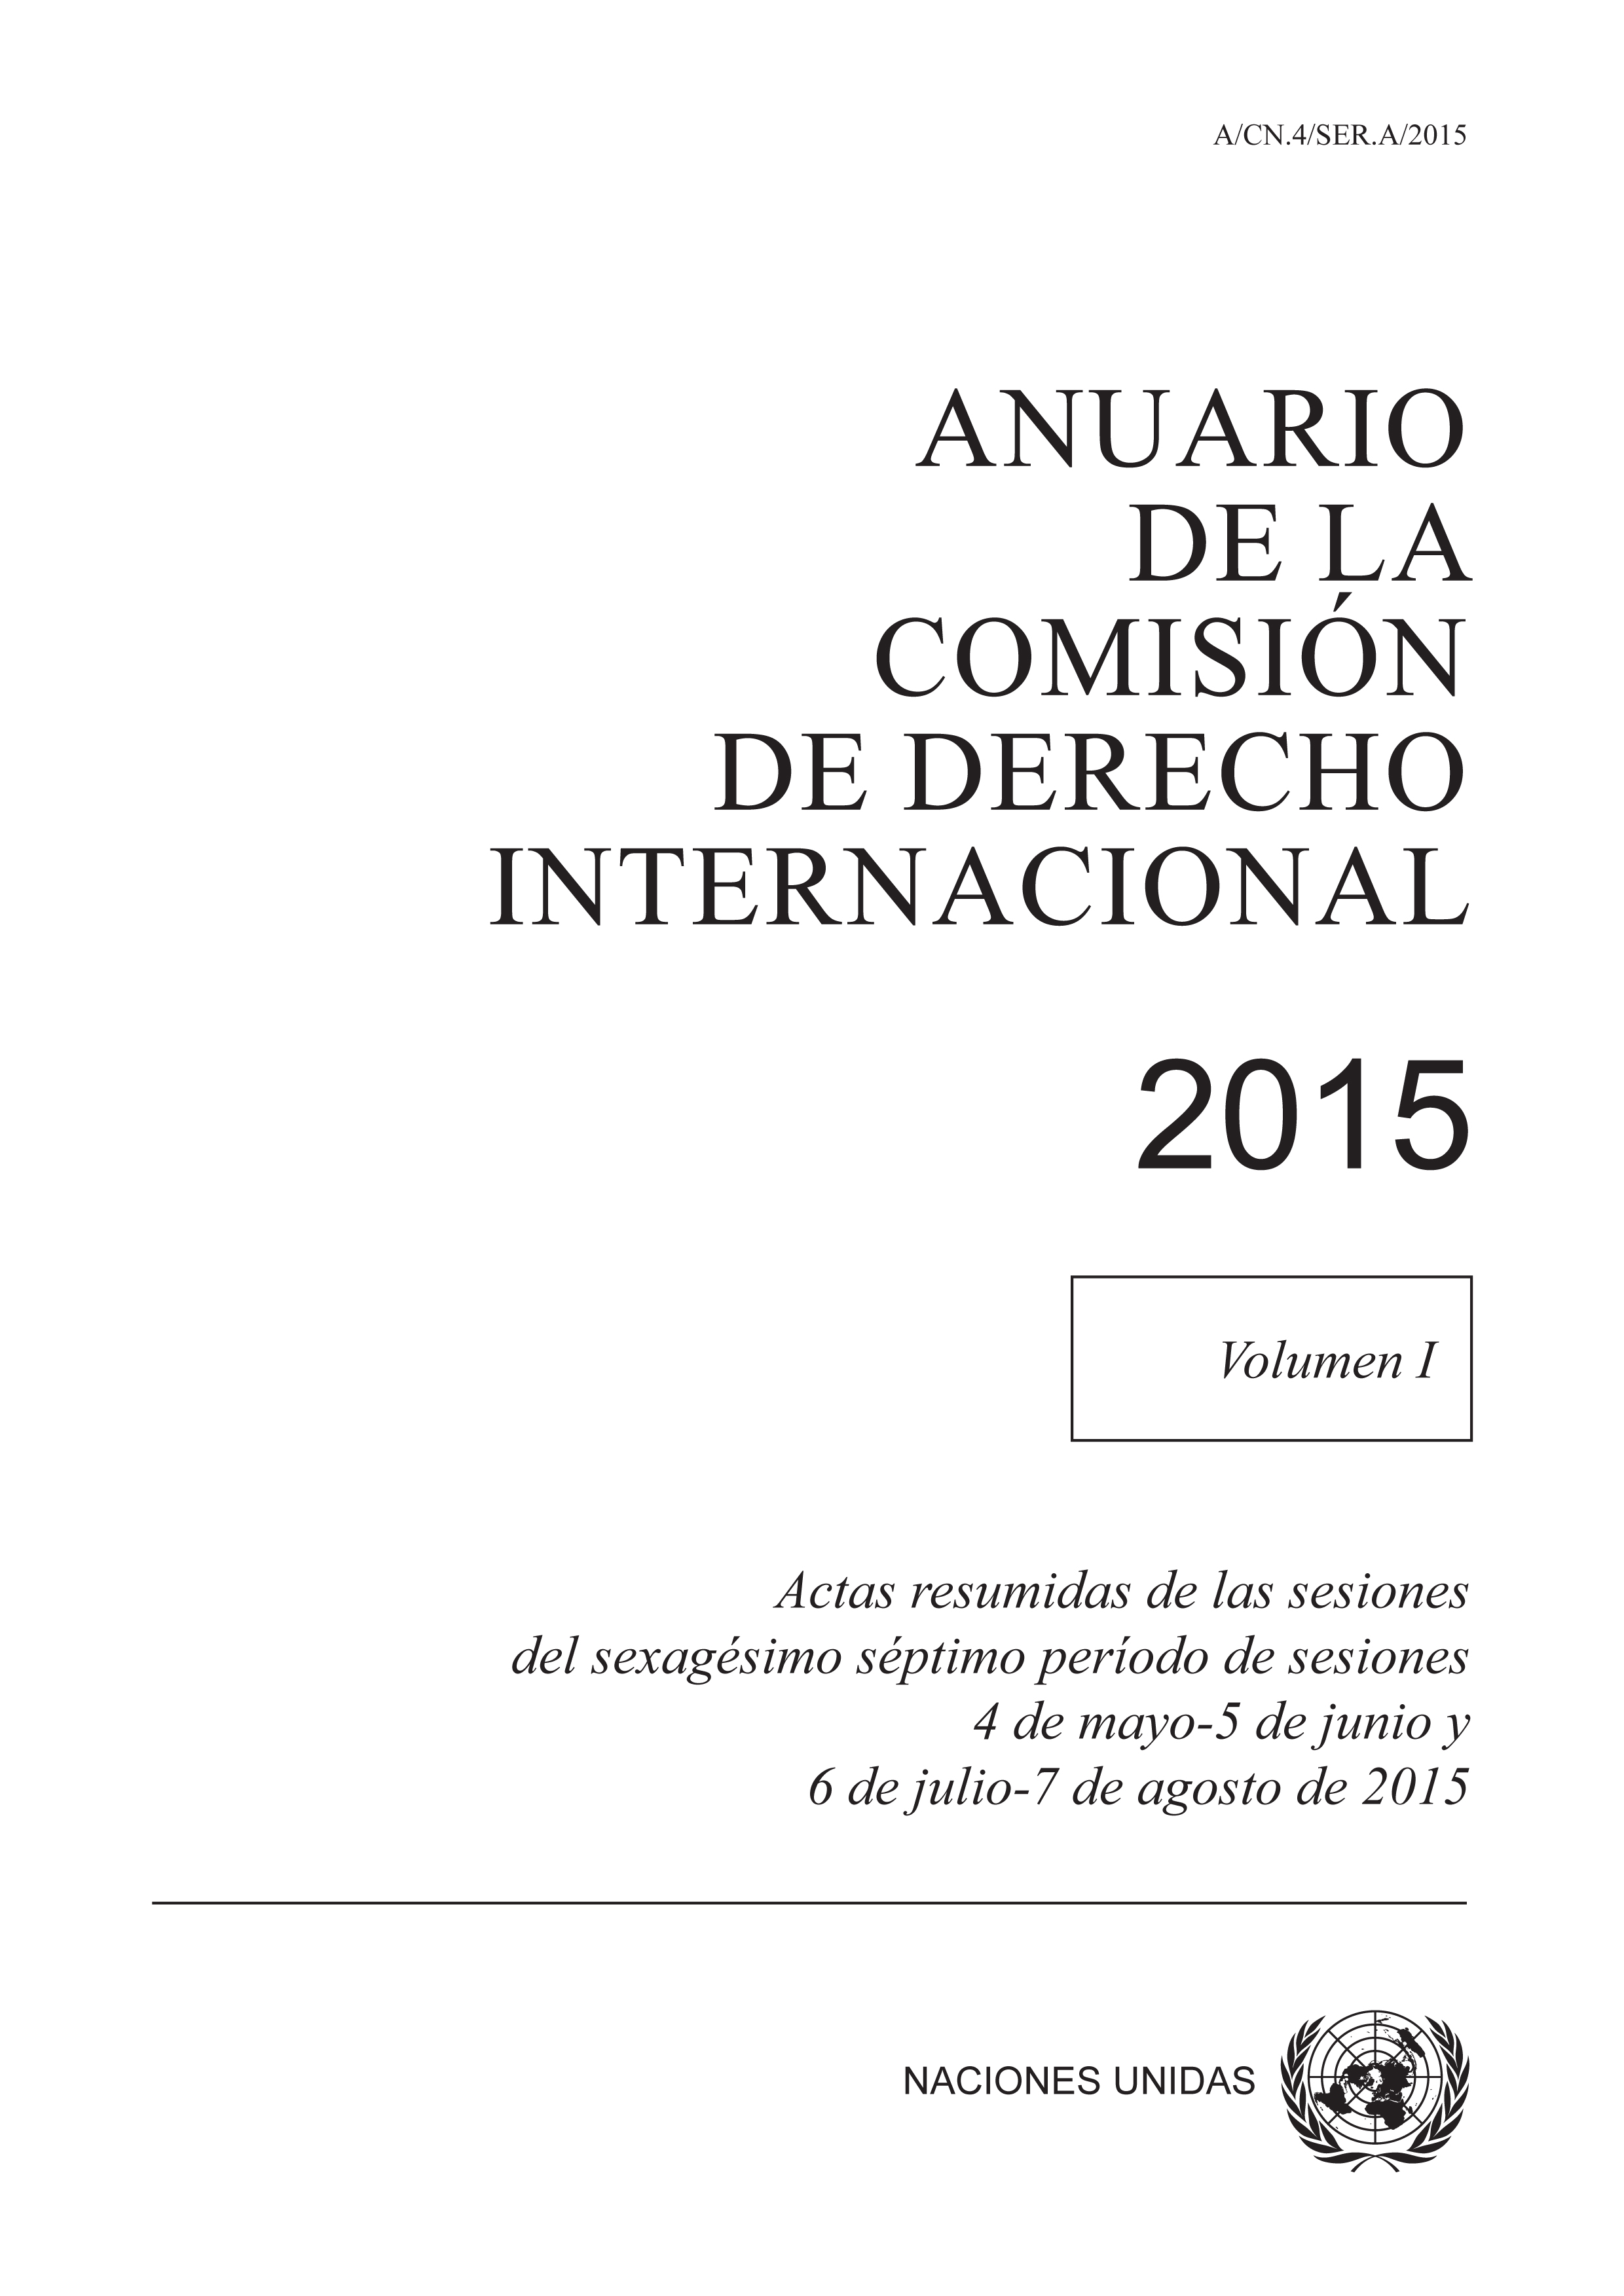 image of Anuario de la Comisión de Derecho Internacional 2015, Vol. I